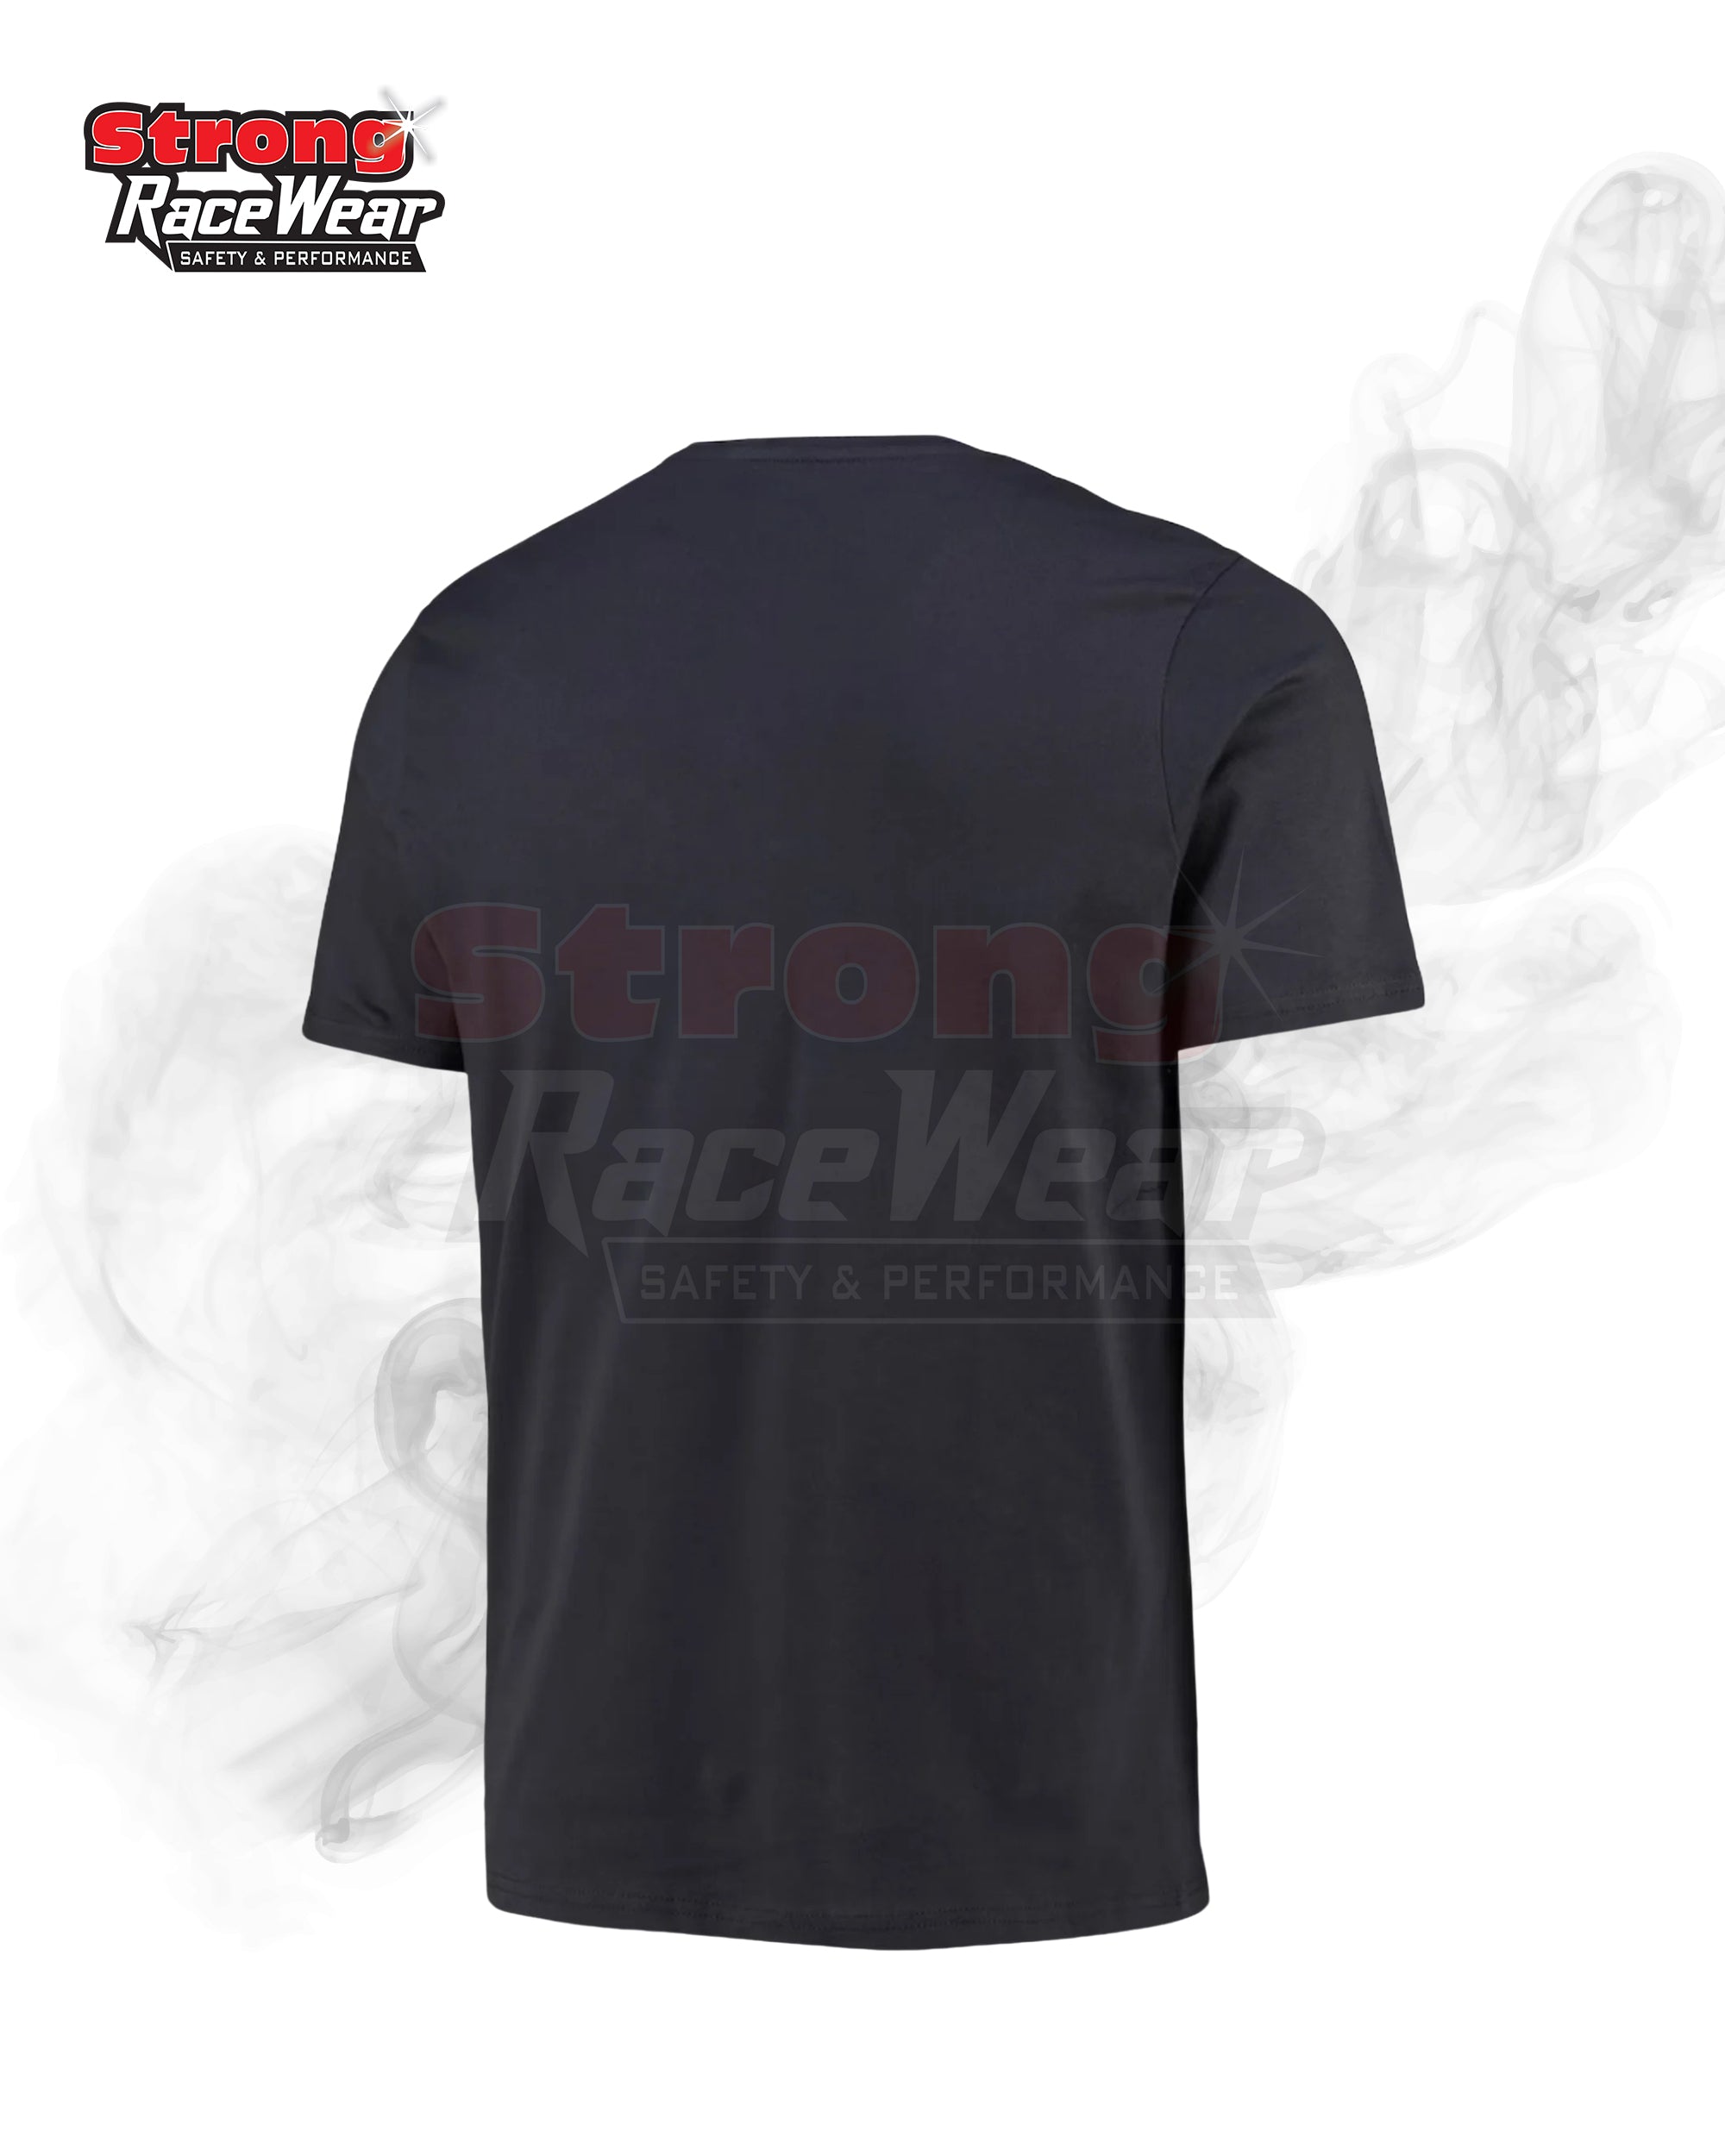 McLaren T-Shirt